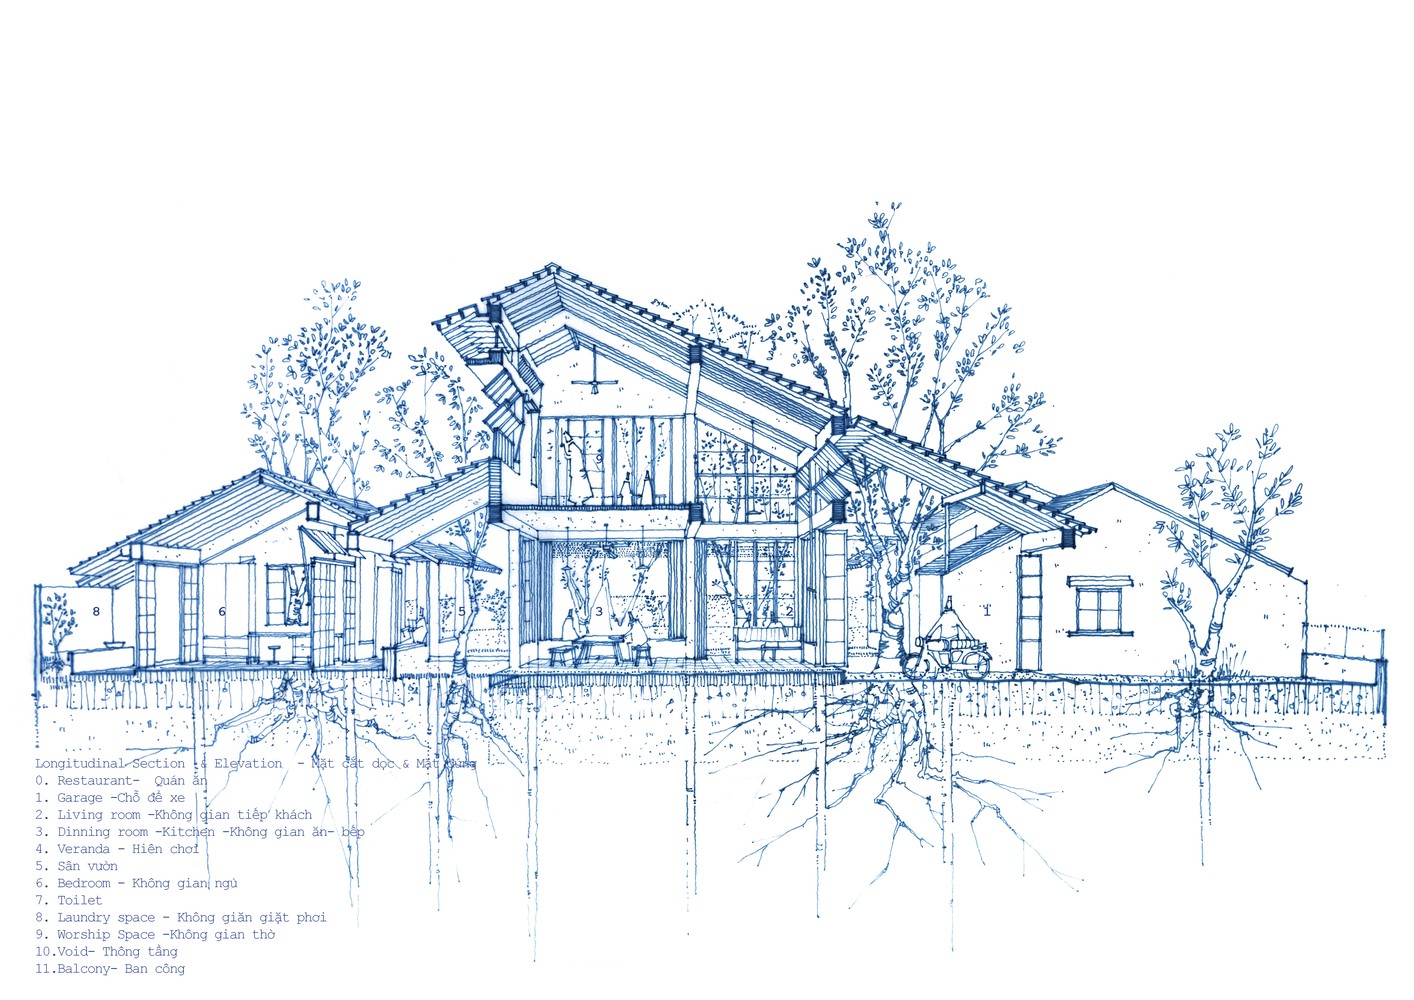 

Thiết kế bản vẽ chi tiết mặt đất dọc và mặt đứng Bình Dương House
